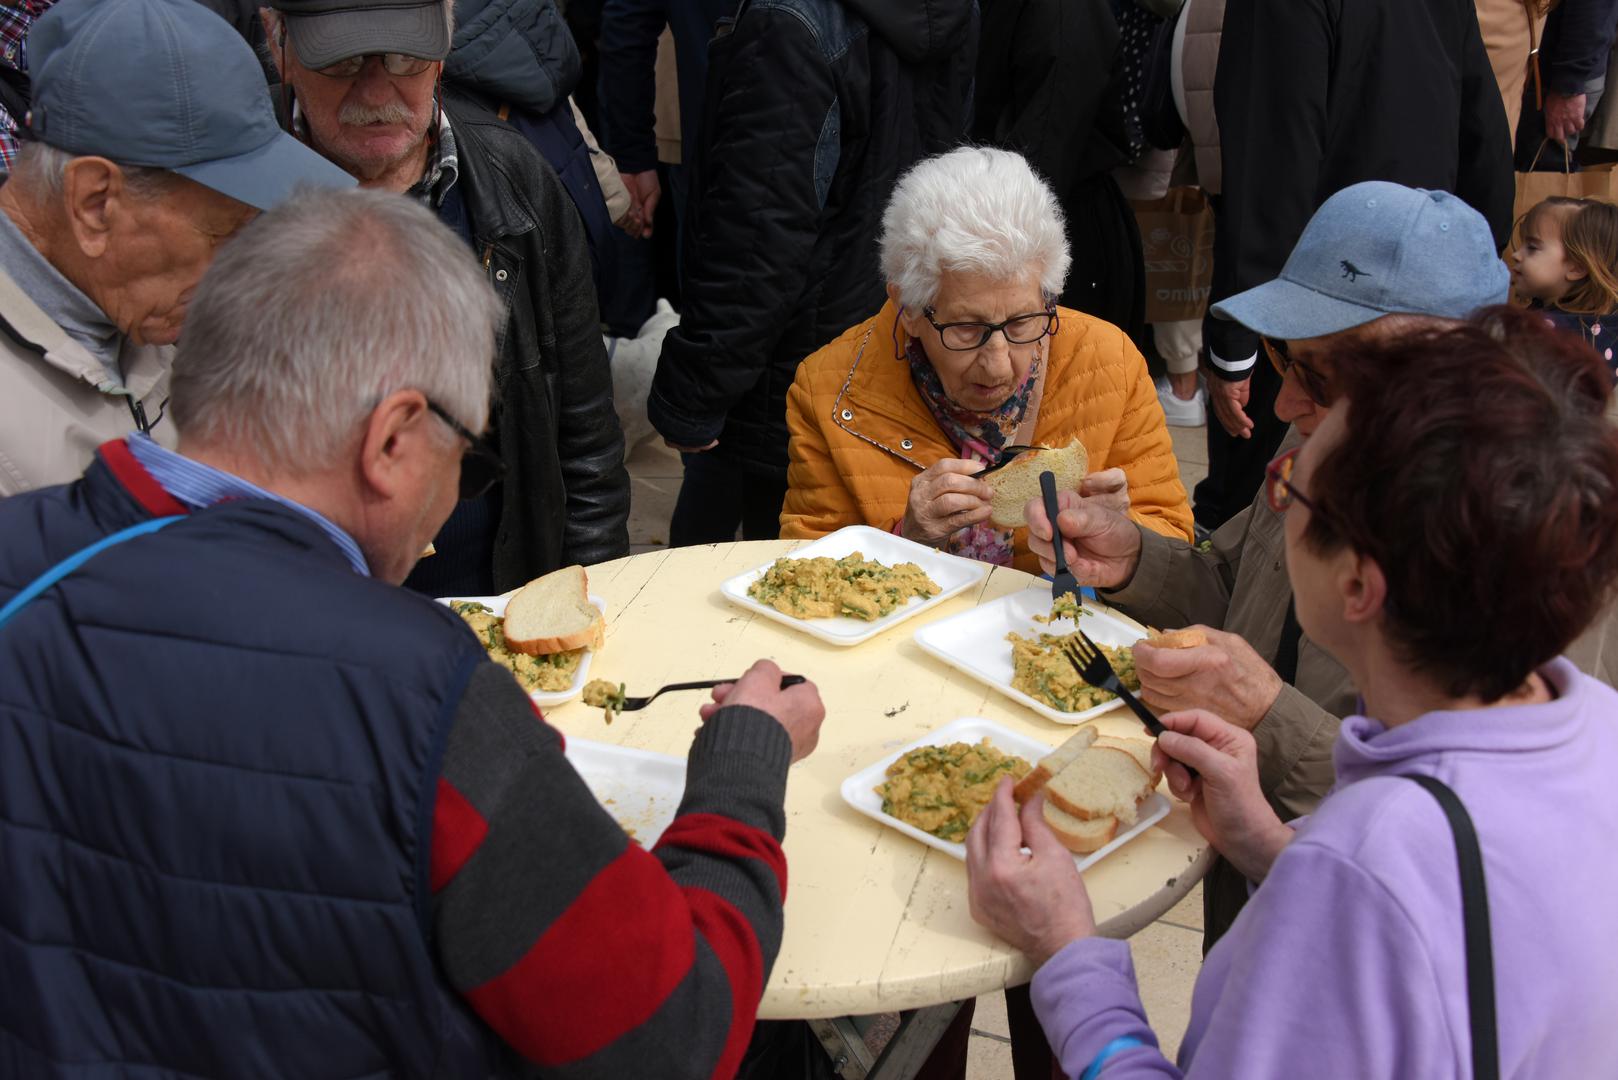 Uoči ovog Uskrsa u Puli je tradicionalno održana uskrsna fritaja, a stotine građana stiglo je u centar kako bi dobili svoju porciju.

